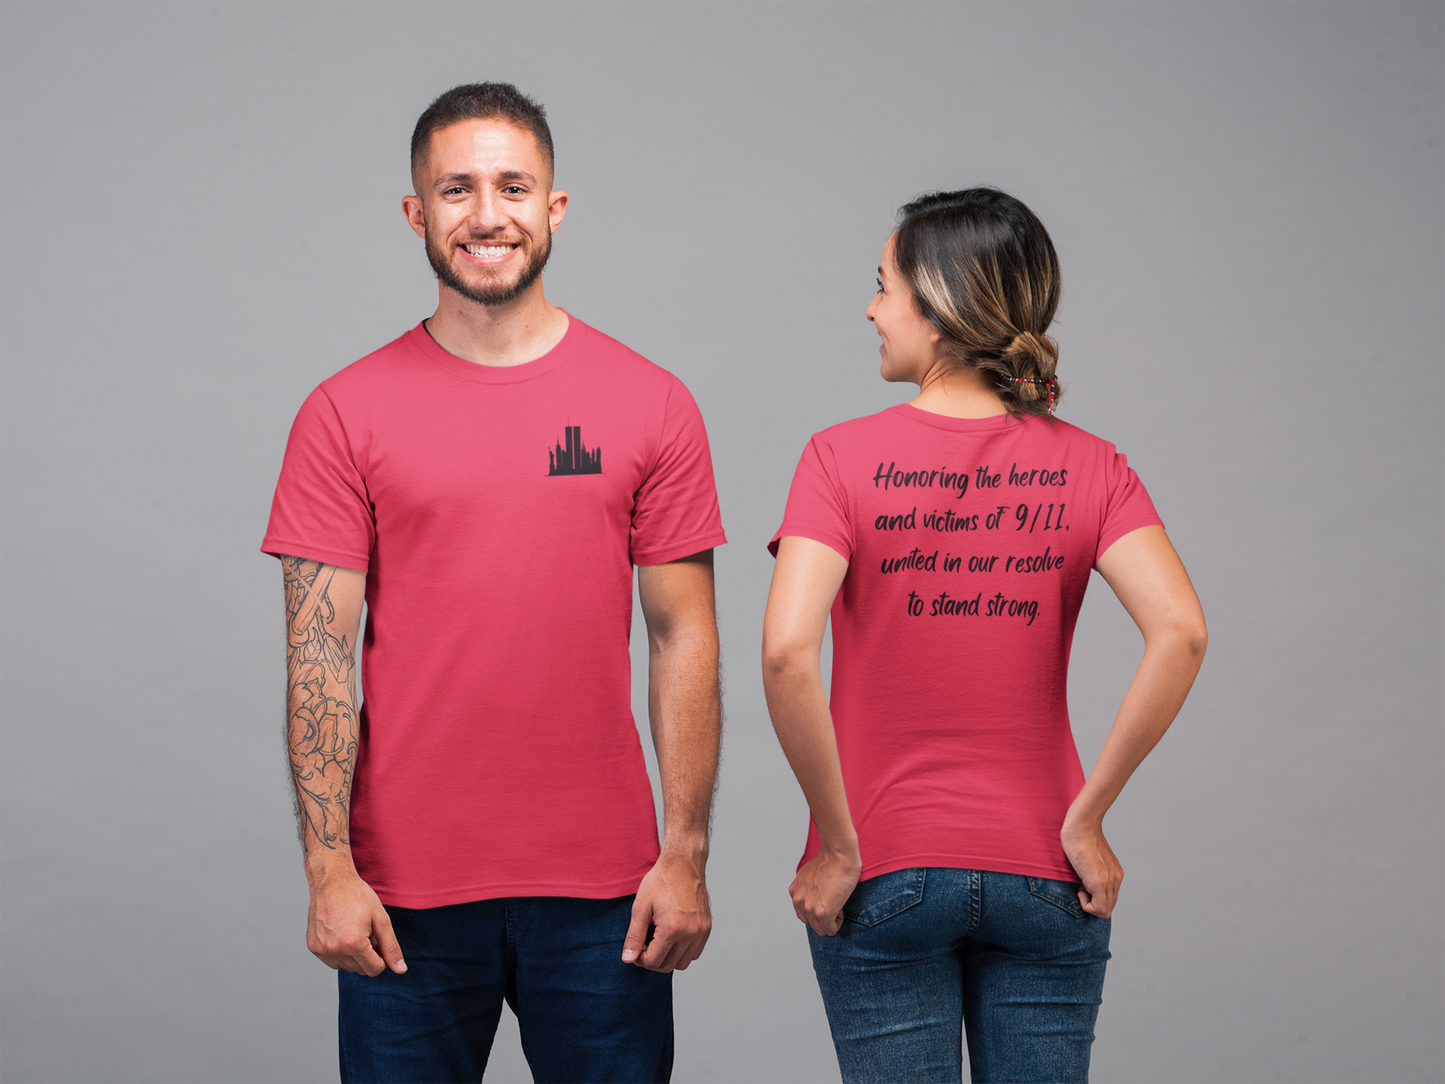 Recuerda siempre, honrando a los héroes - Camiseta unisex para hombre y mujer